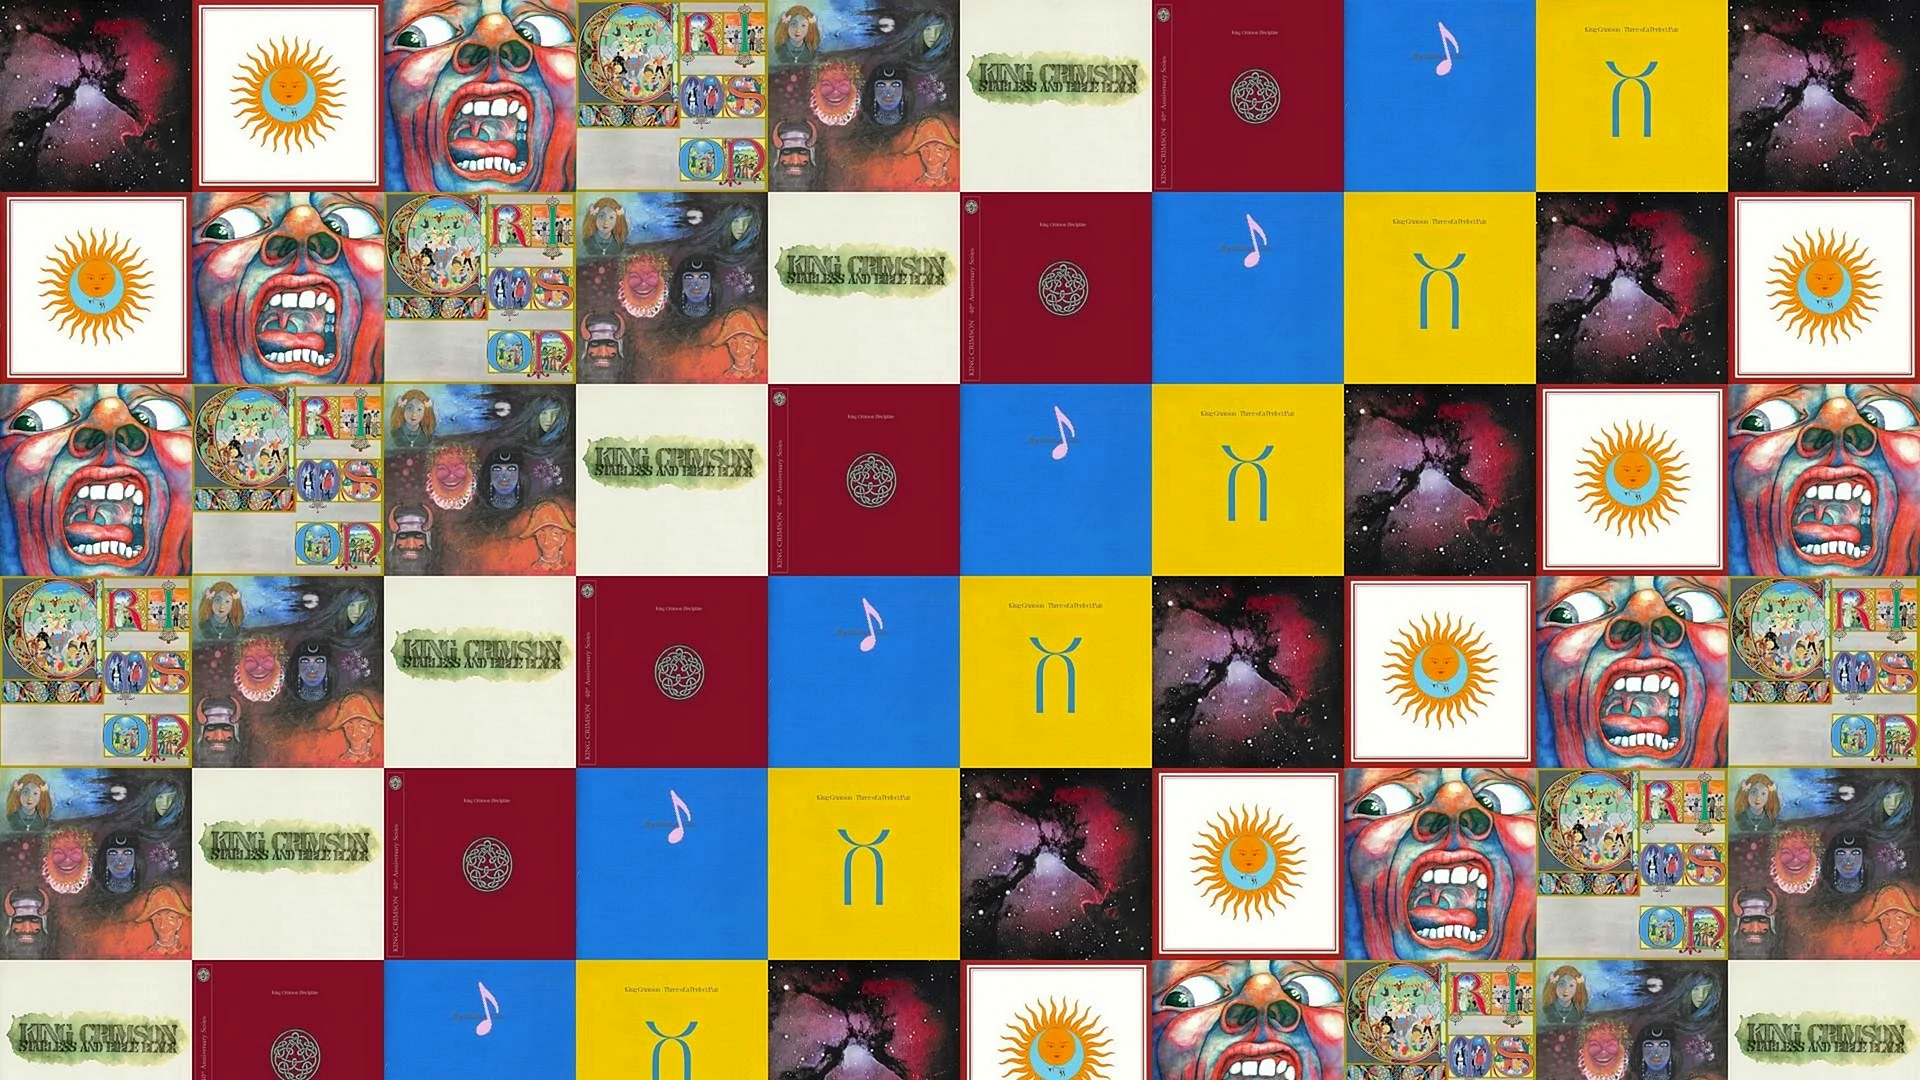 King Crimson Wallpaper